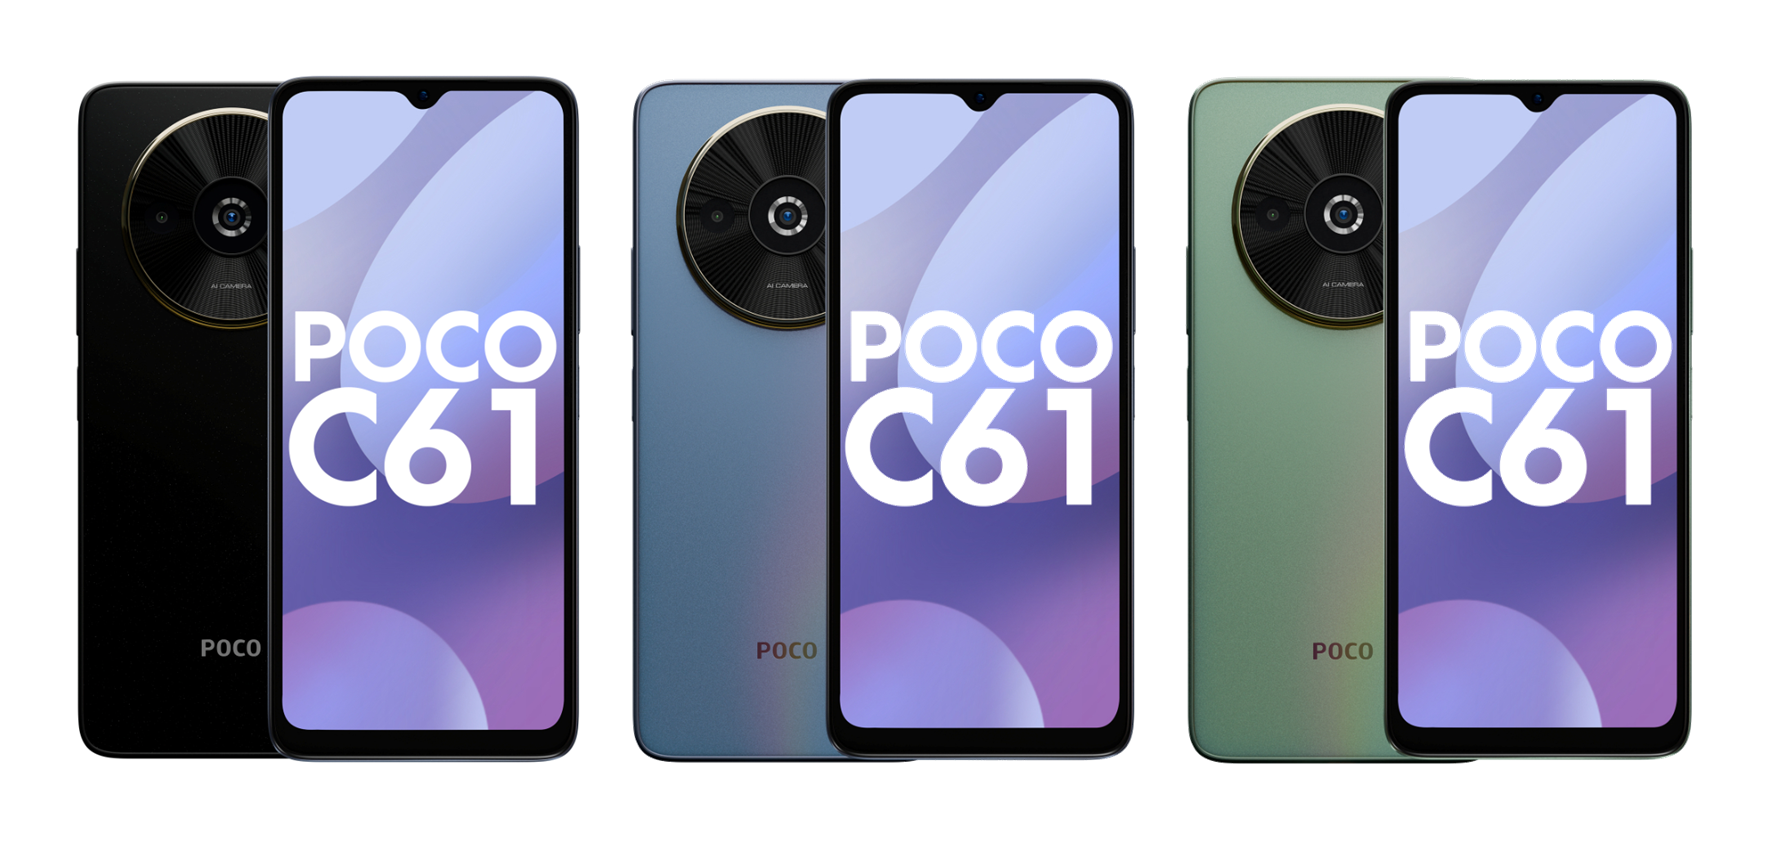 90Hz LCD-Display, MediaTek Helio G36 Chip und Dual-Kamera: Bilder und Details des POCO C61 Smartphones sind online aufgetaucht